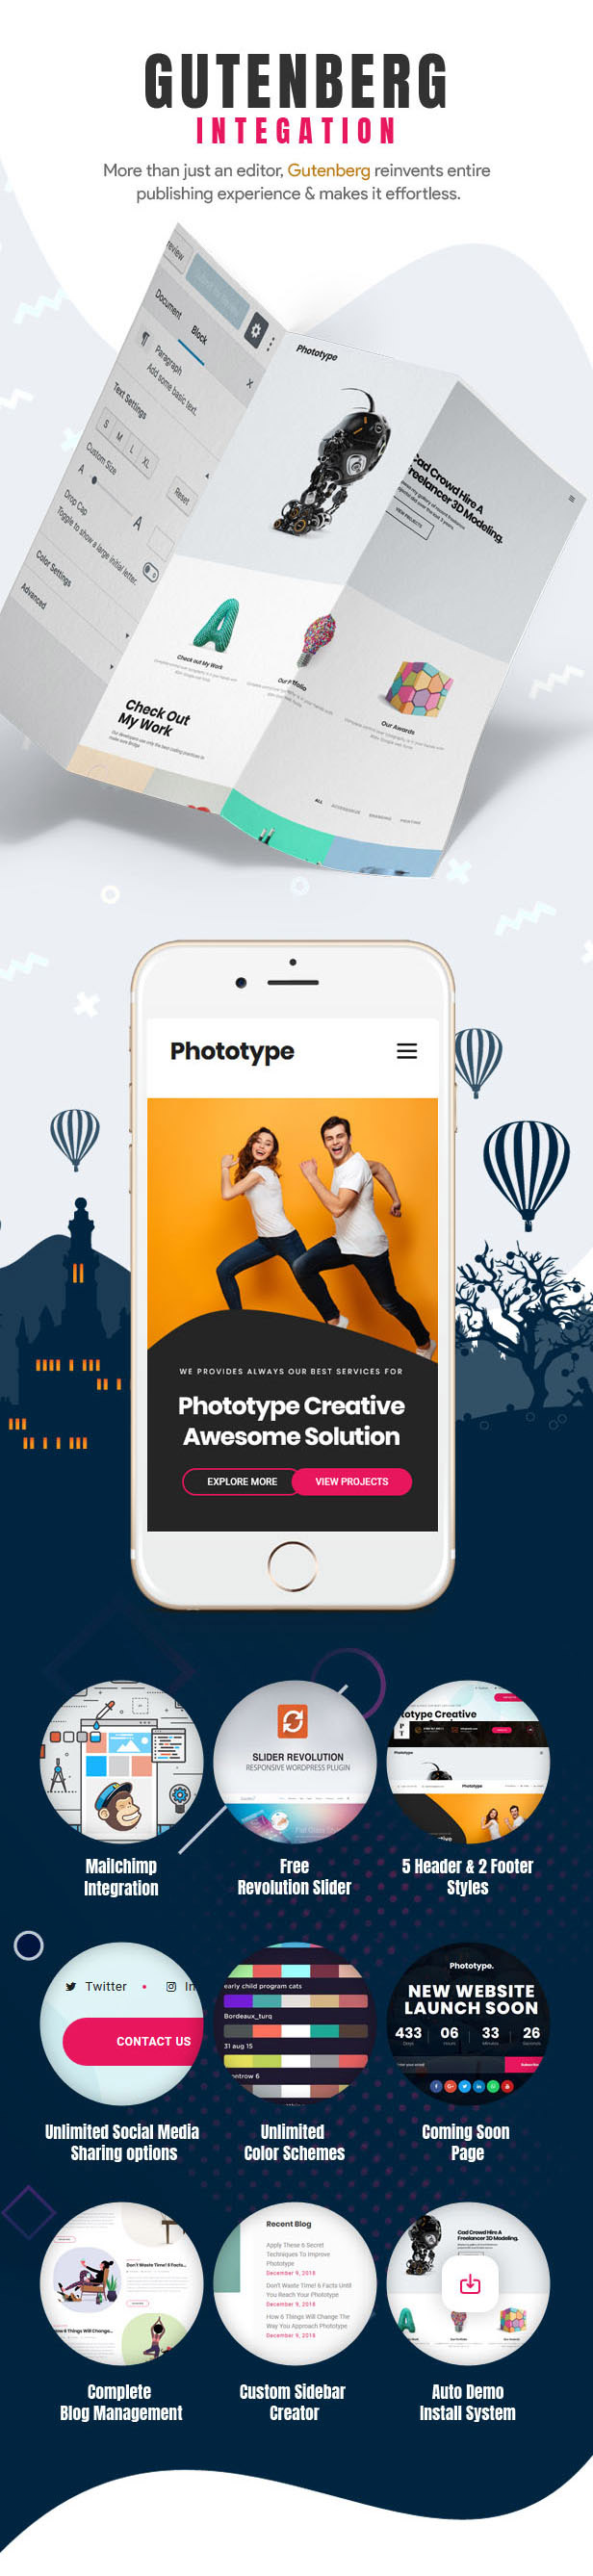 Phototype - Nuevo tema de WordPress Elementor Portoflio 2019 para agencias, sitios de fotografía - 4